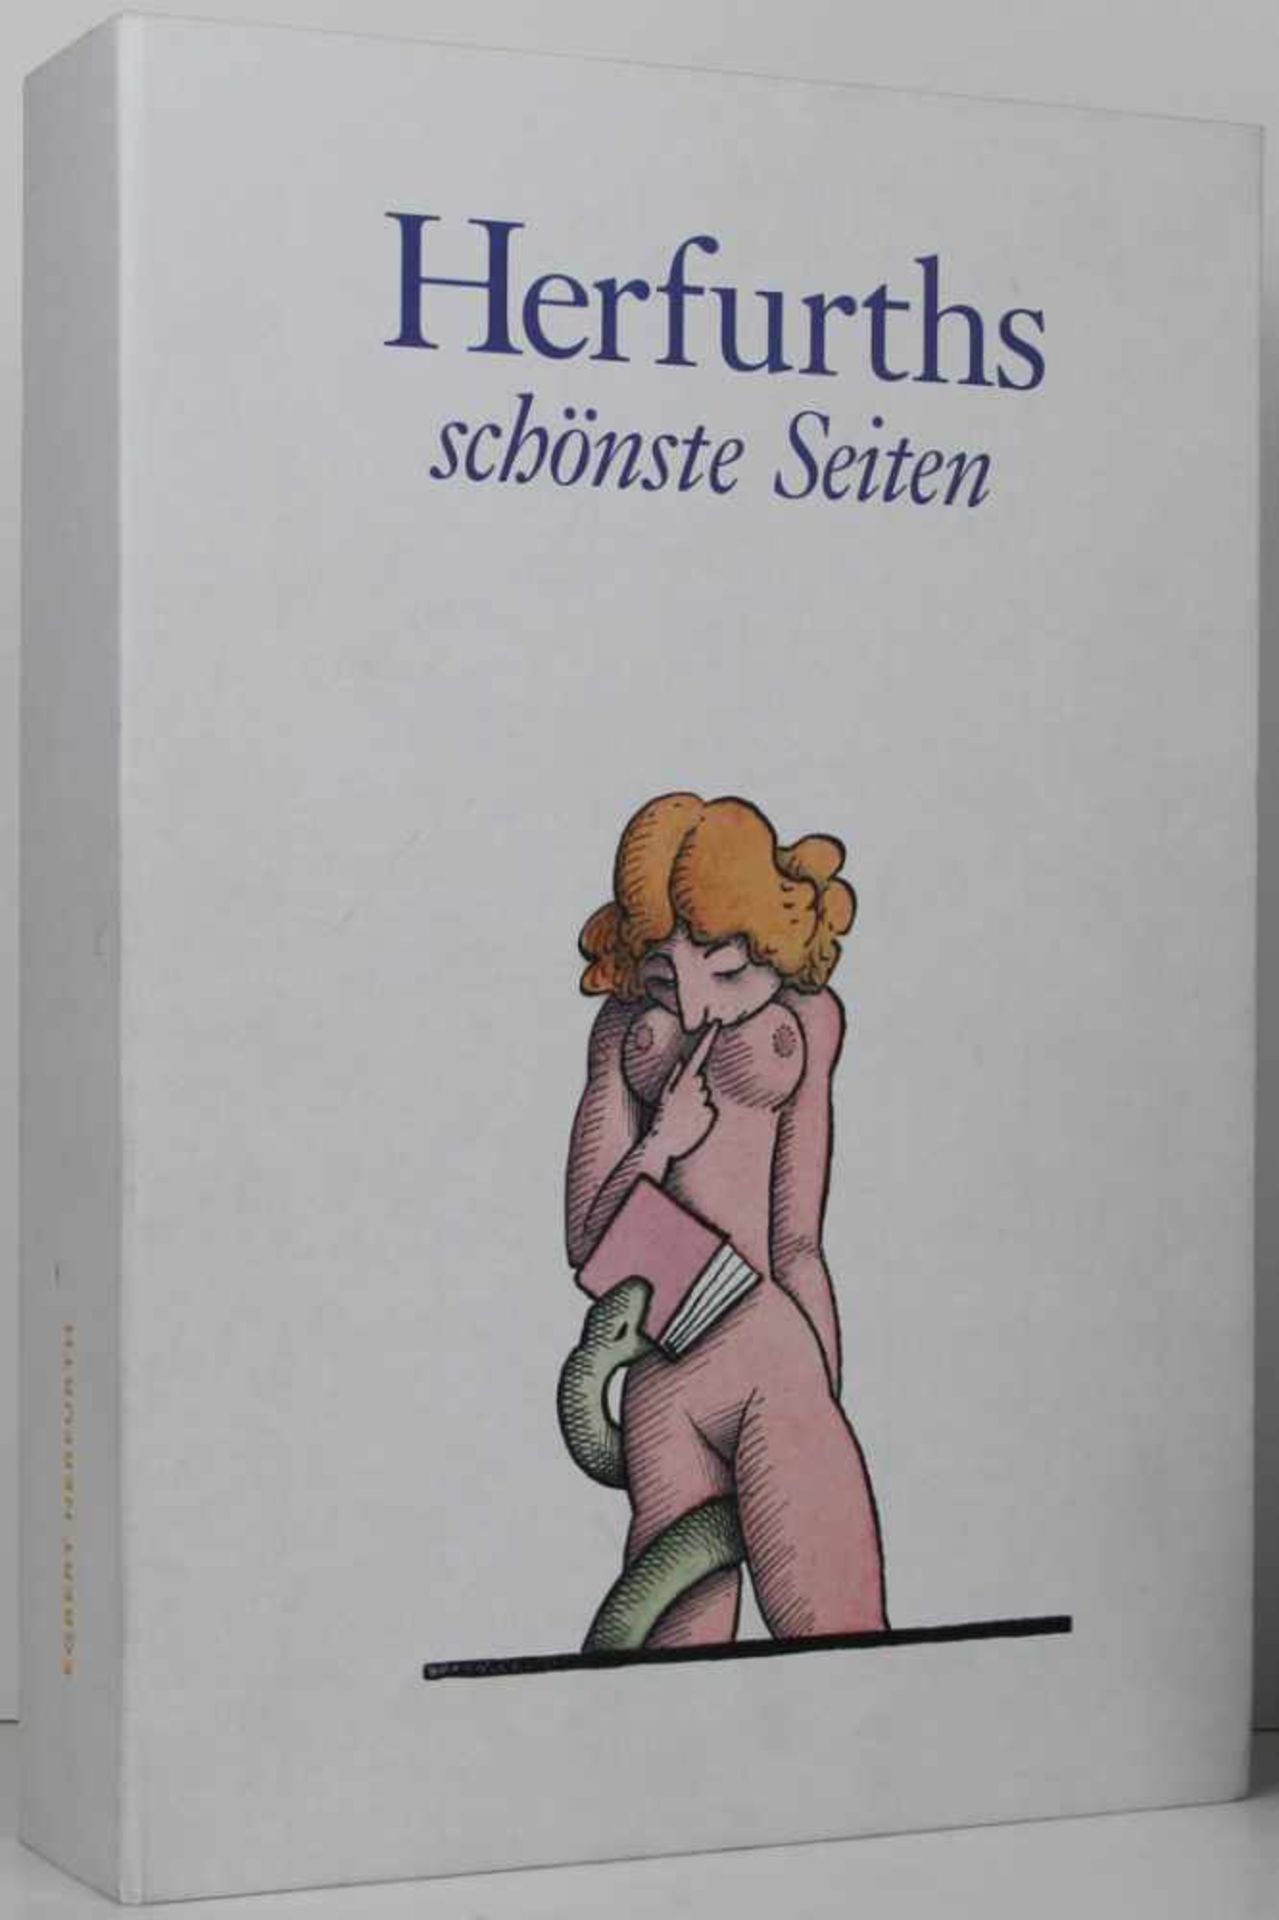 Herfurth, Egbert. -Kästner, Herbert:Herfurths schönste Seiten. Das buchgraphische Werk 1972-2008.